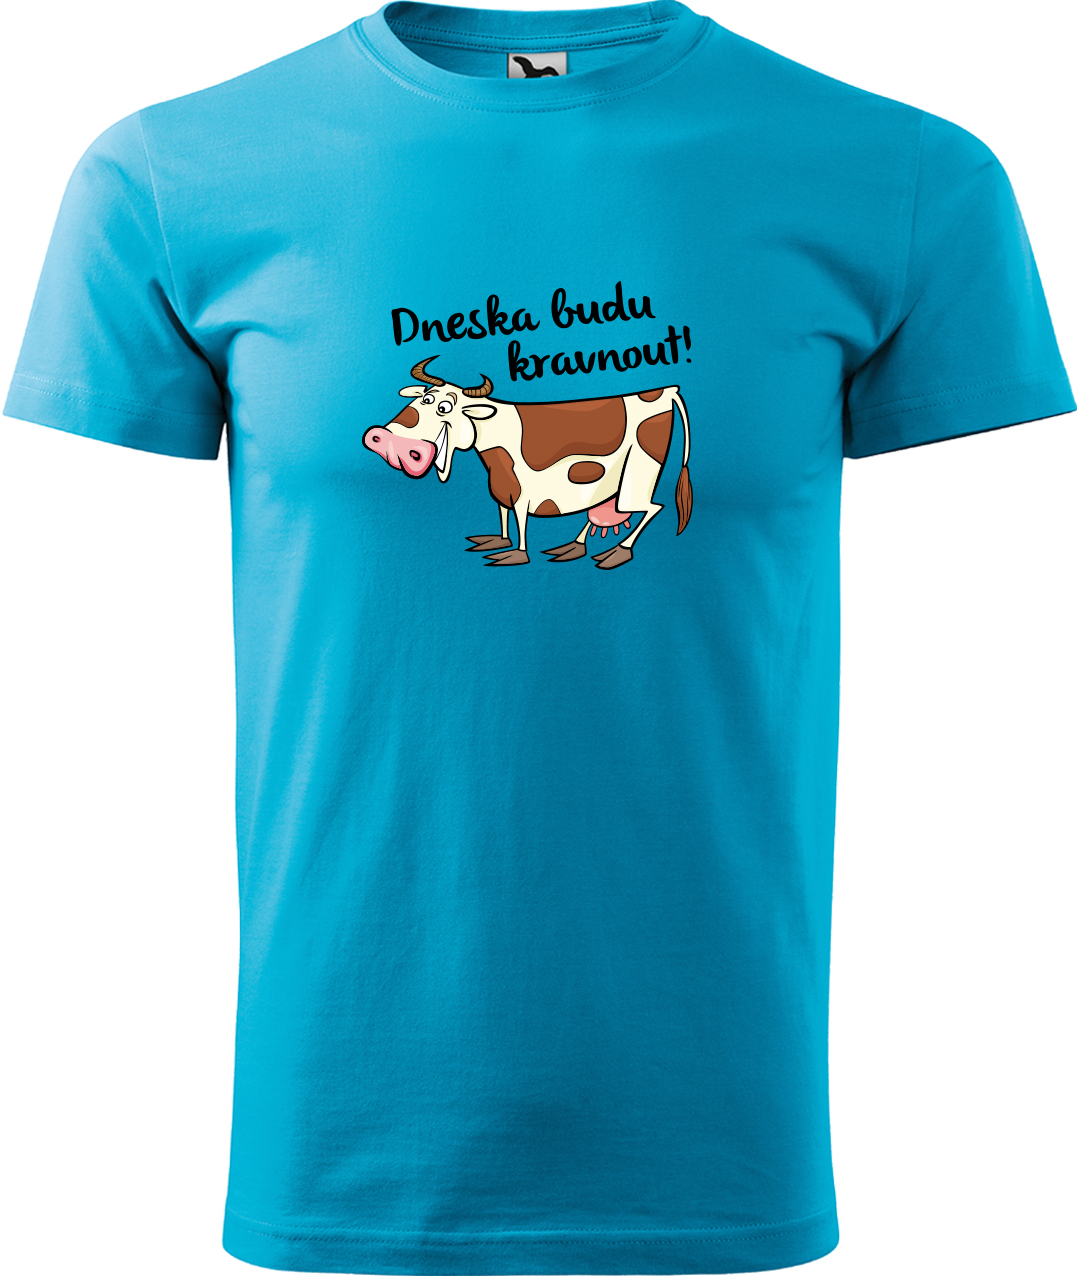 Pánské tričko s krávou - Dneska budu kravnout! Velikost: XL, Barva: Tyrkysová (44), Střih: pánský